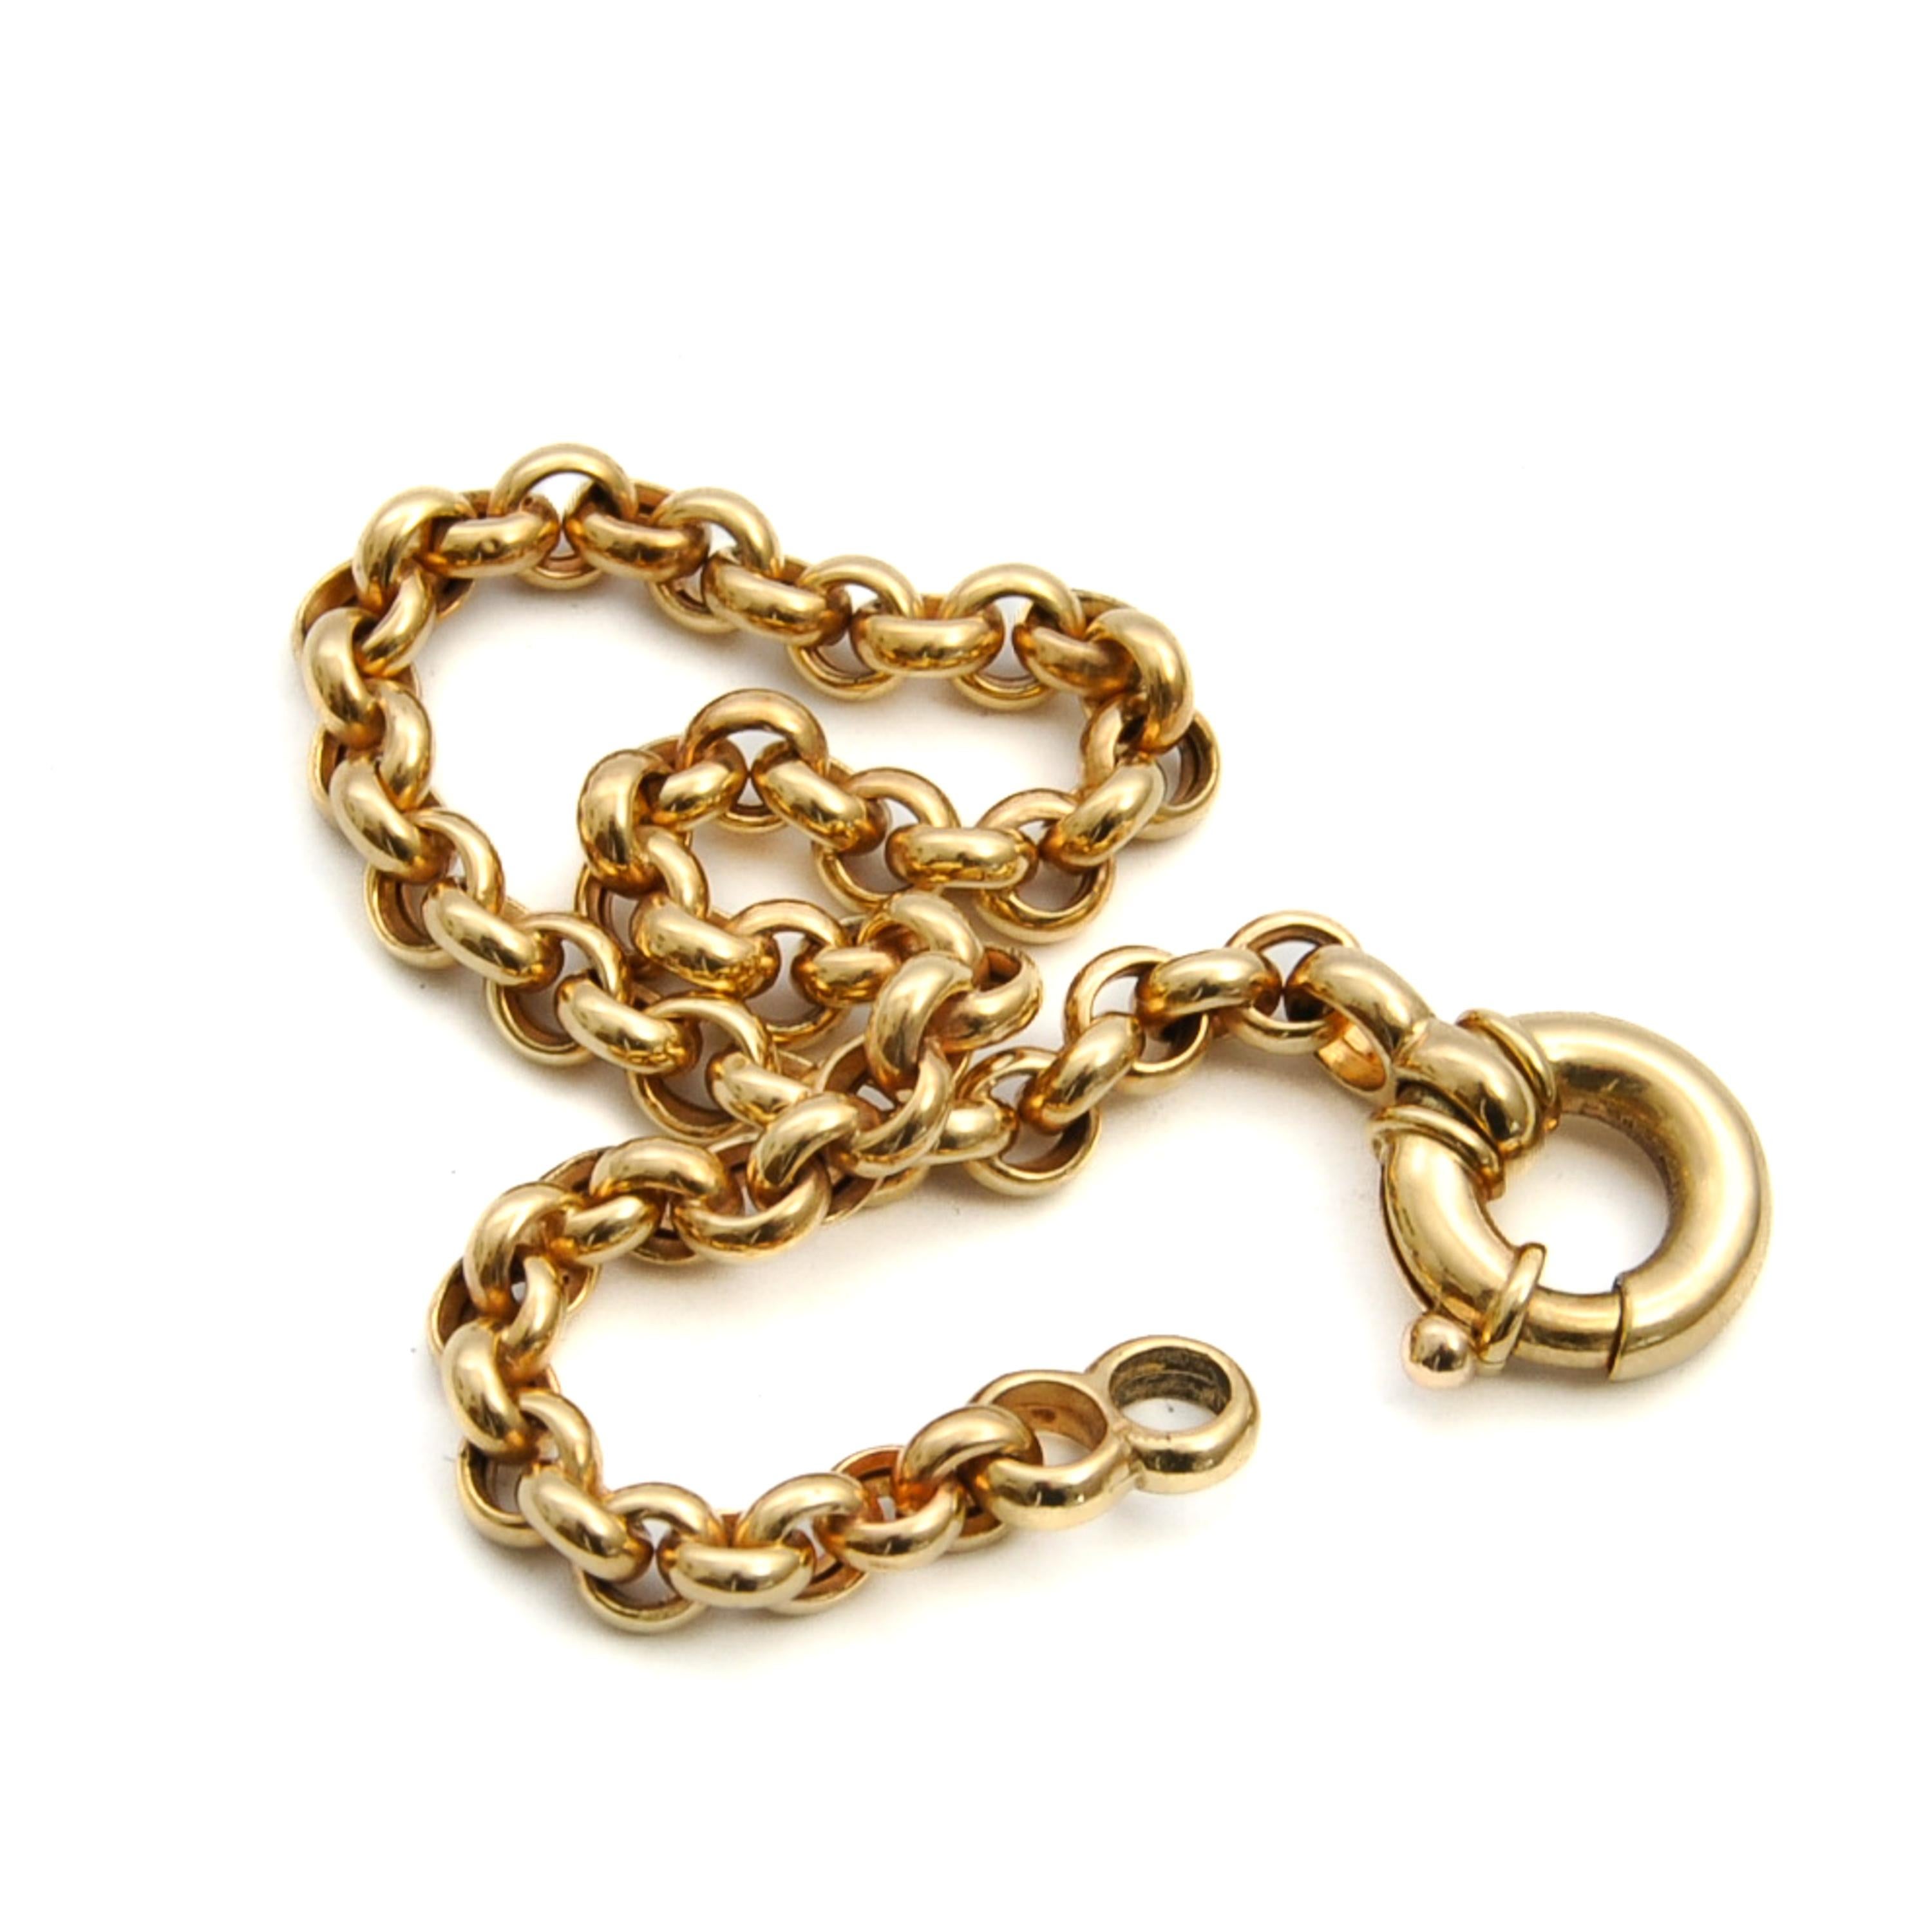 Un charmant bracelet vintage en or 14 carats avec anneau à ressort de marin et chaîne rolo. Chaque maillon rond est parfaitement poli et les maillons s'entrelacent pour former cette magnifique chaîne. Le bracelet est prêt à être porté seul ou